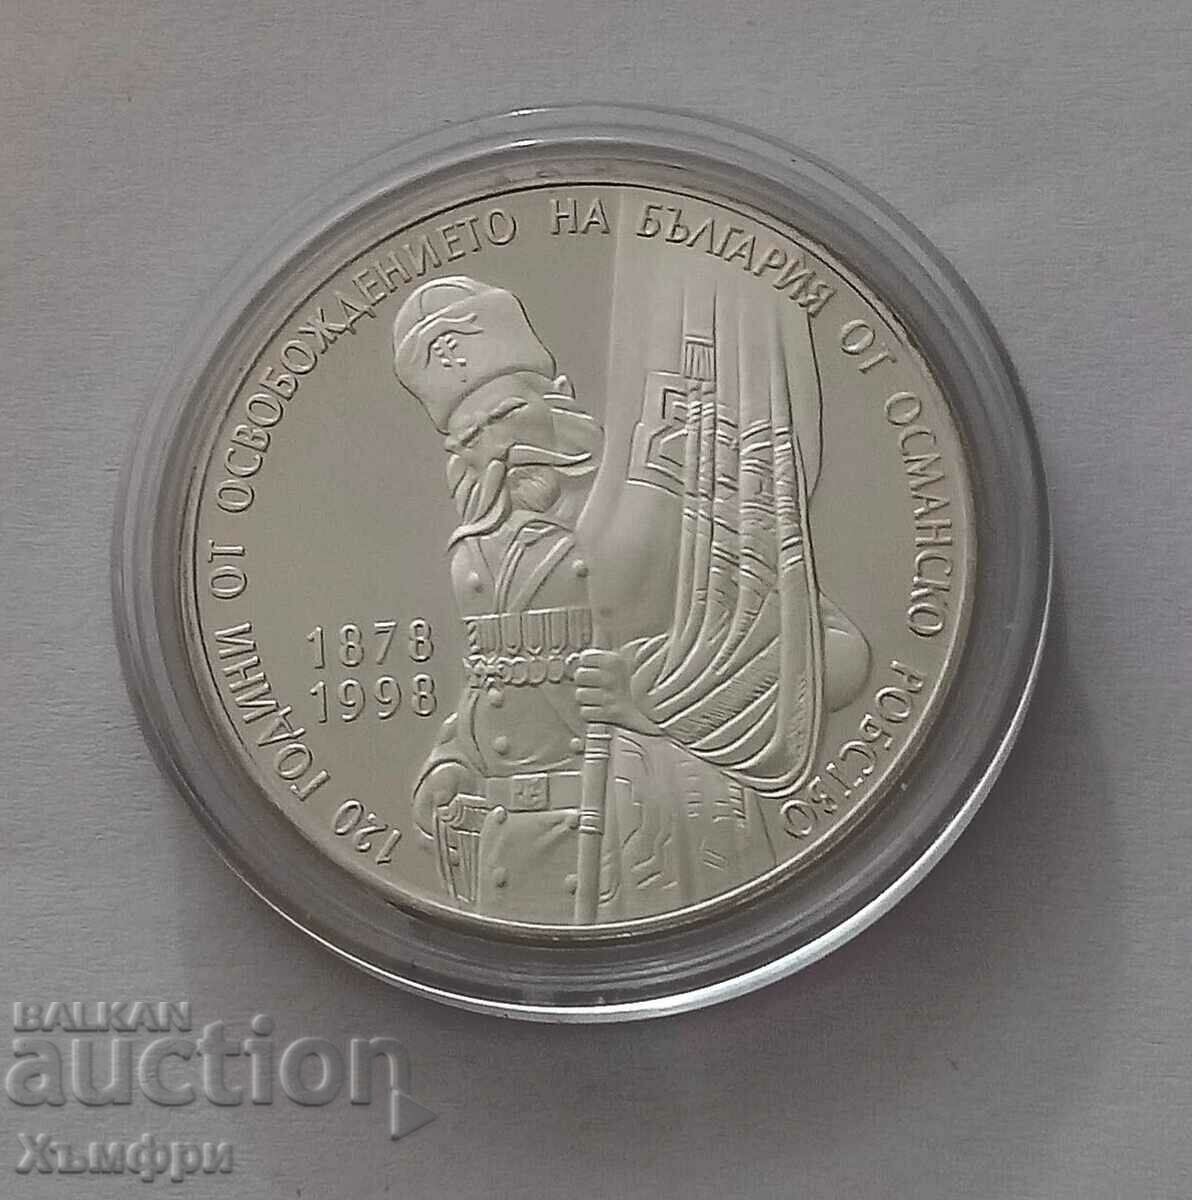 Сребърна монета 120 години от освобождението на България от